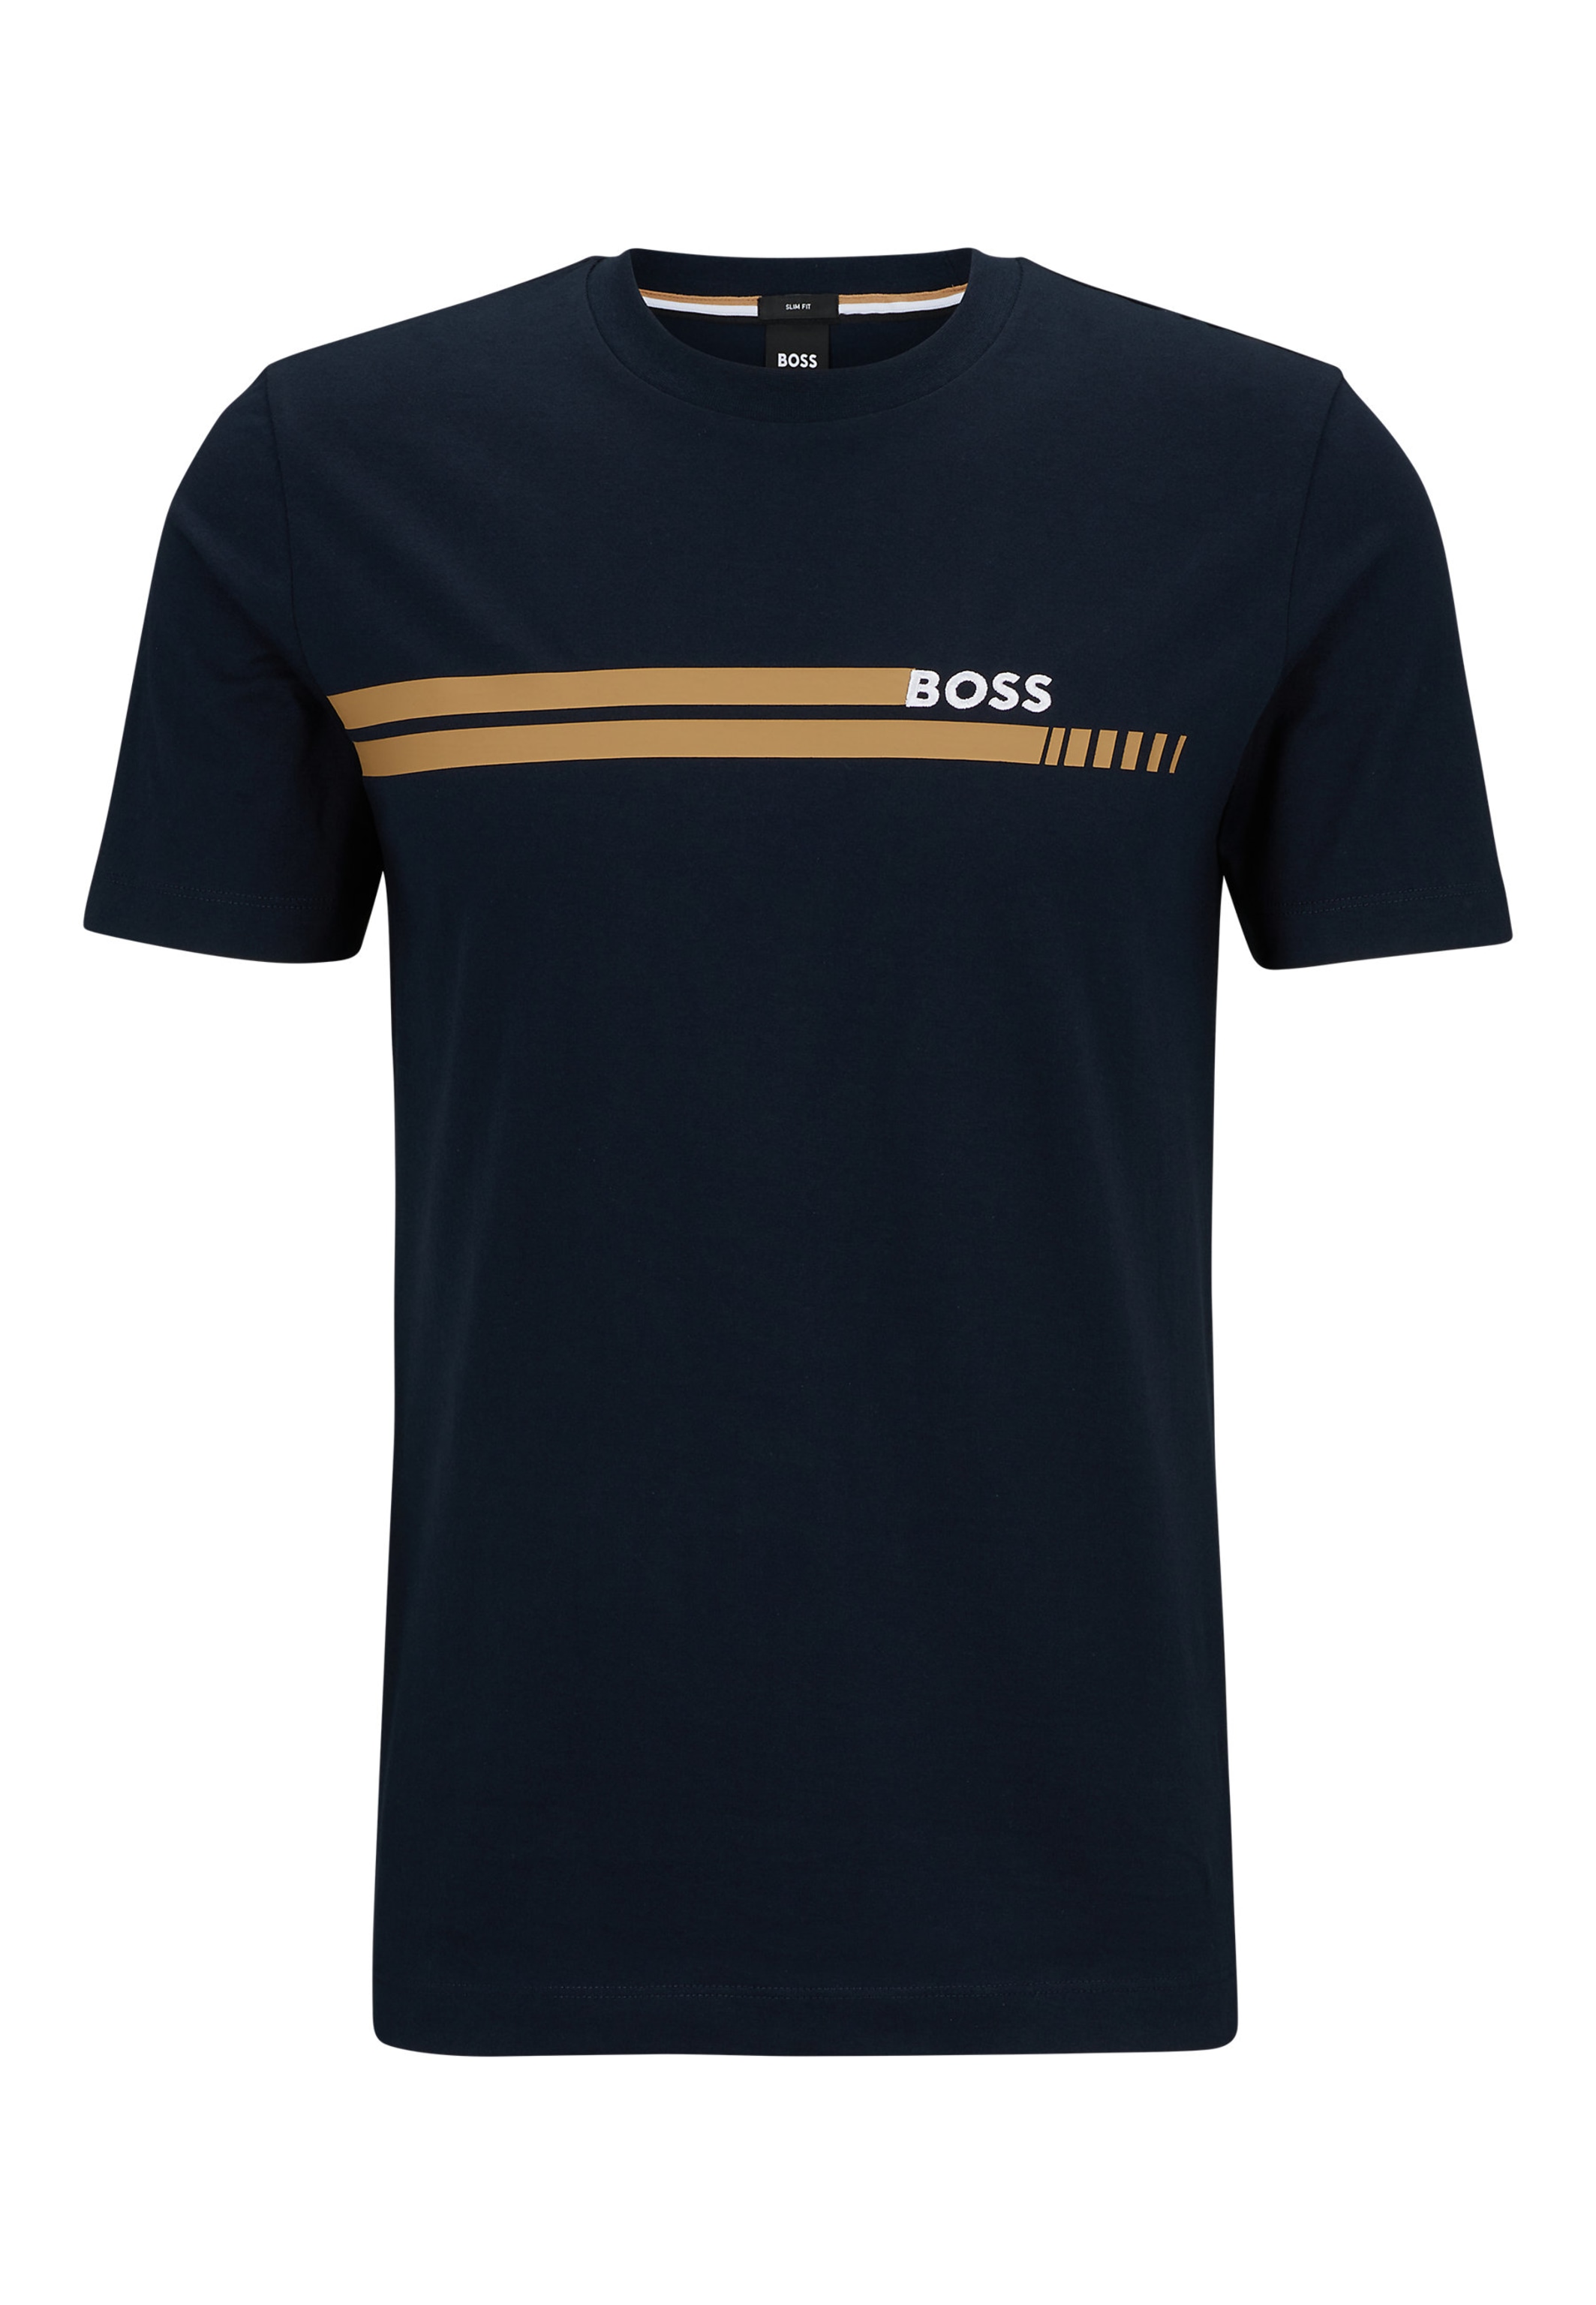 BOSS T-Shirt TESSLER 197 Slim Fit in dunkelblau